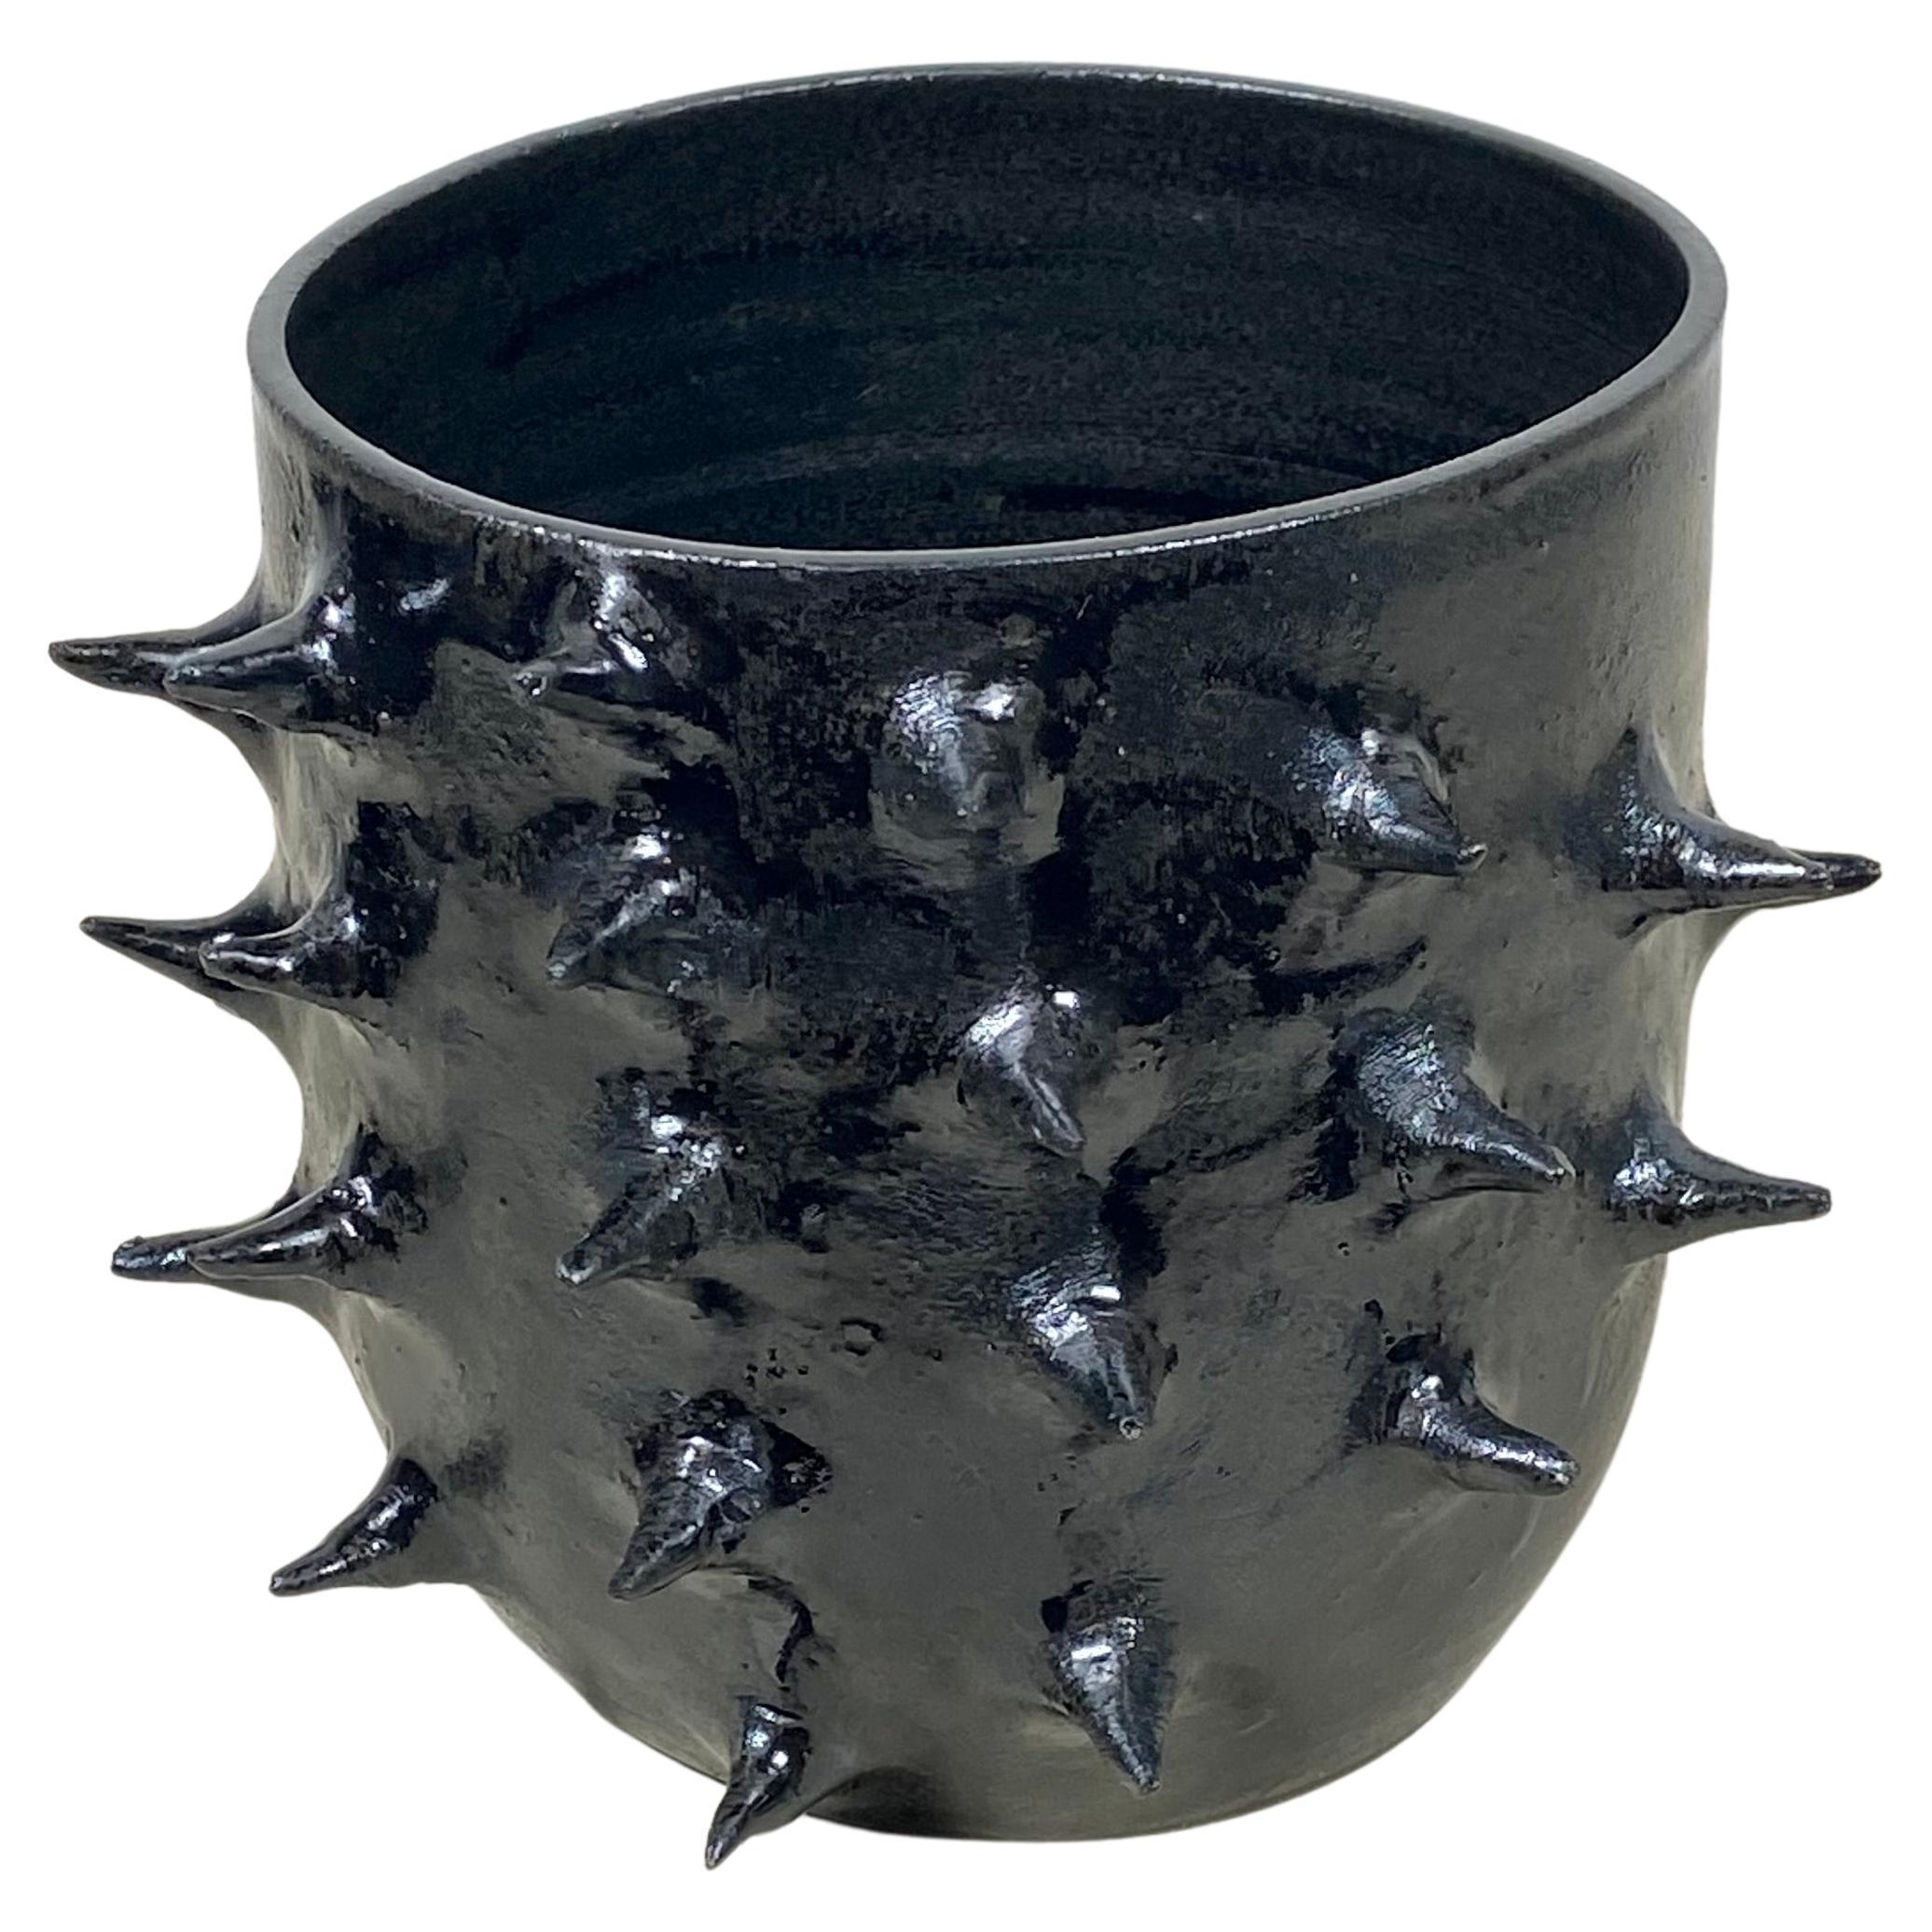 Spiky Ceramic Planter/Bowl with Metallic Glaze For Sale